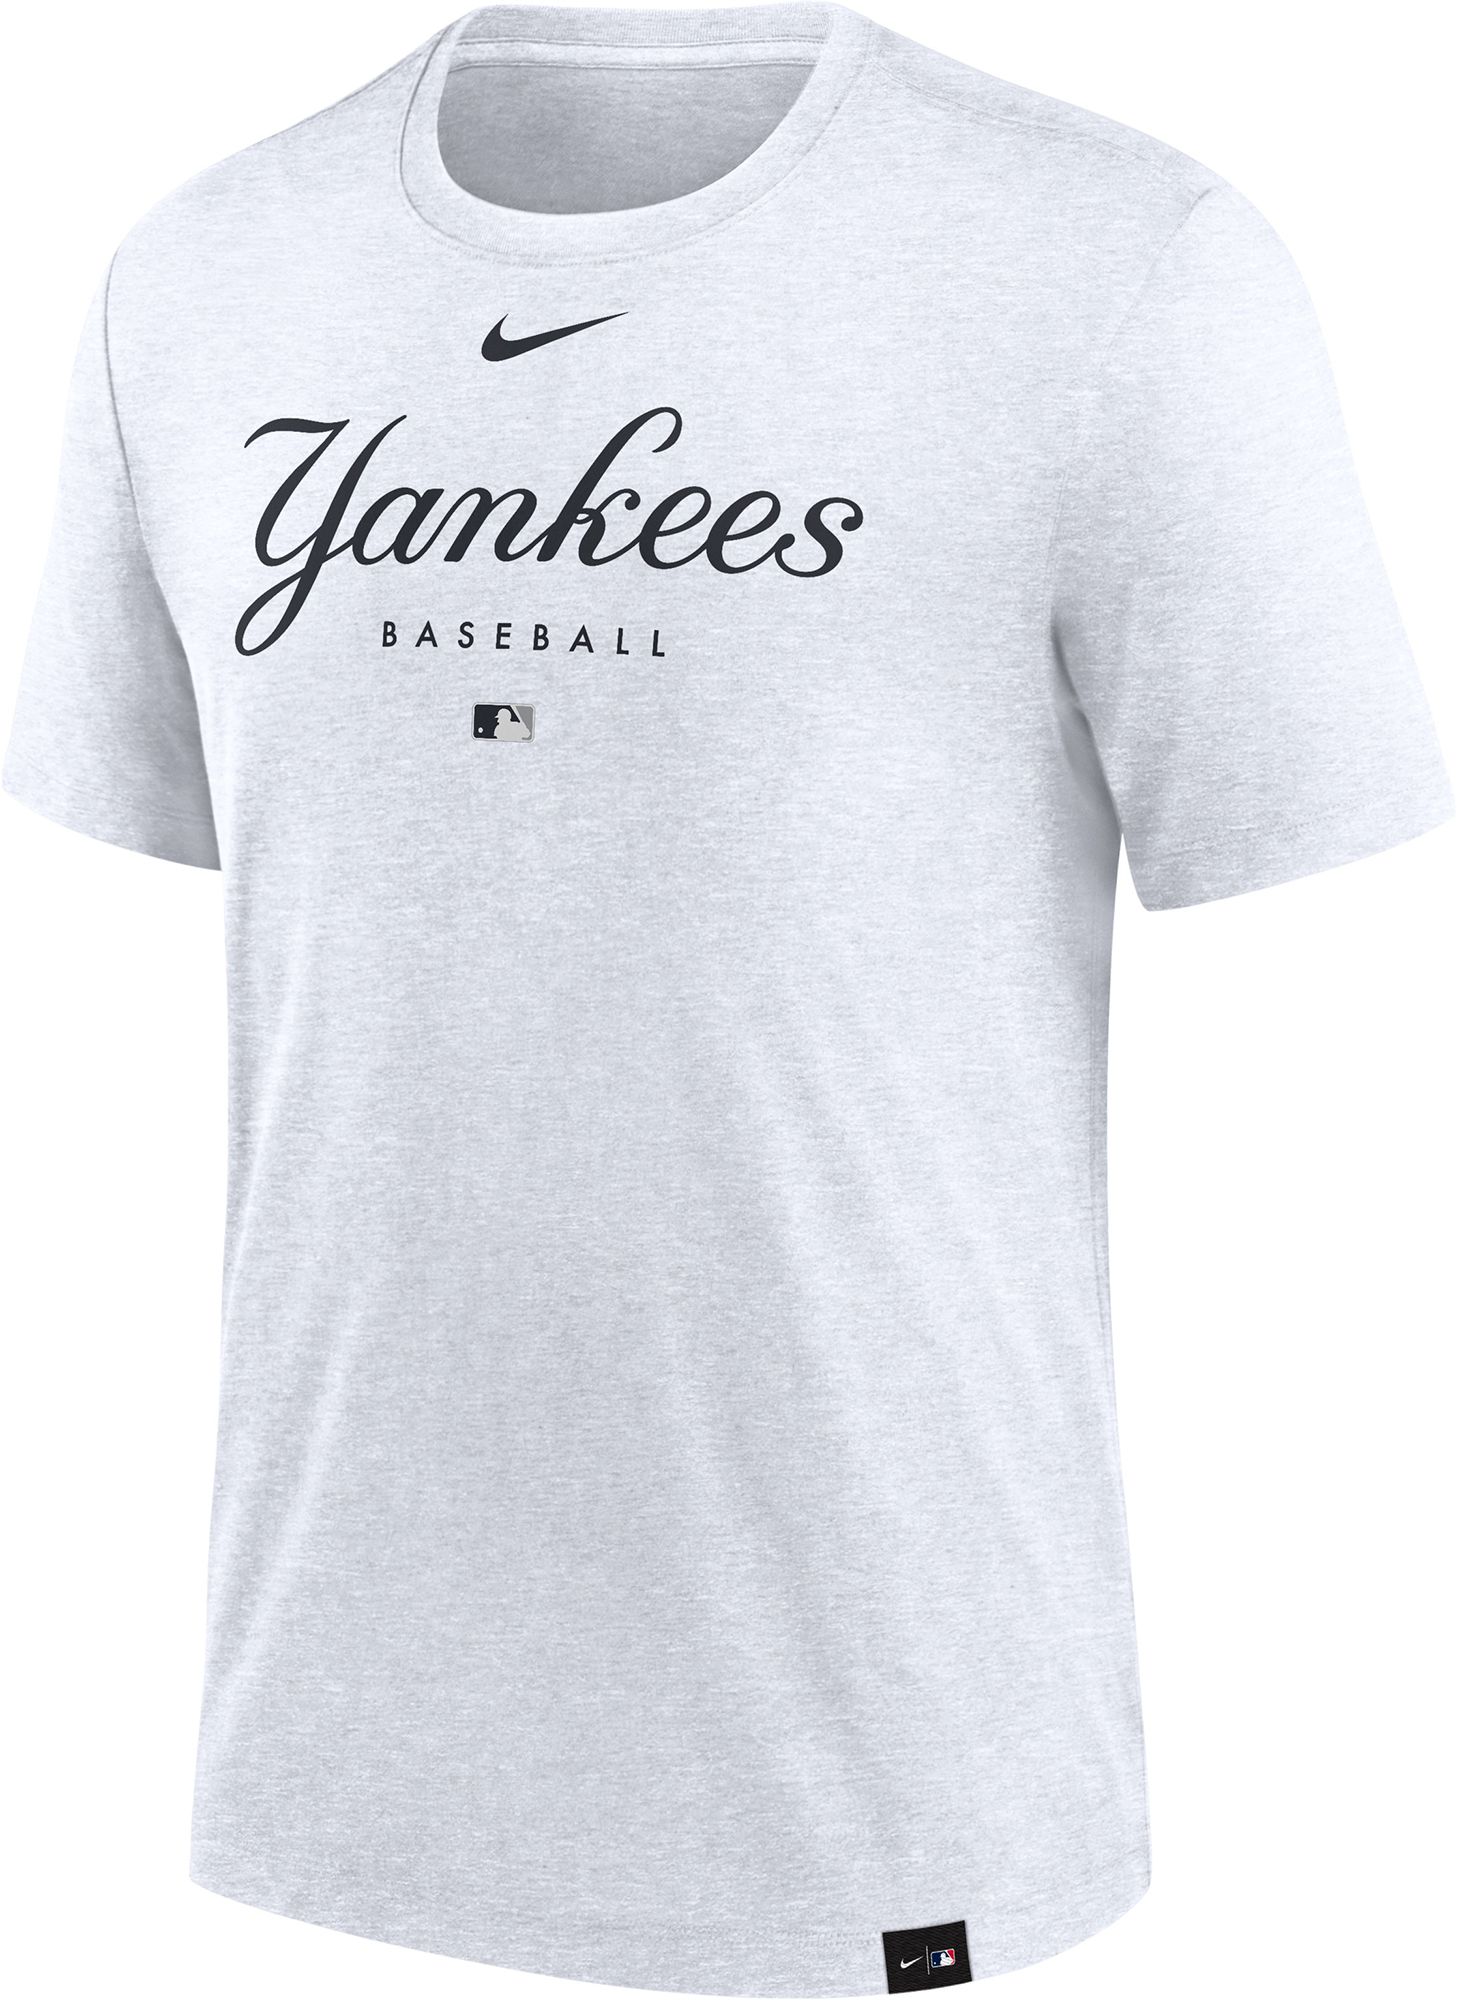 Petals and Peacocks x '47 NY Yankees Long Sleeve T-Shirt